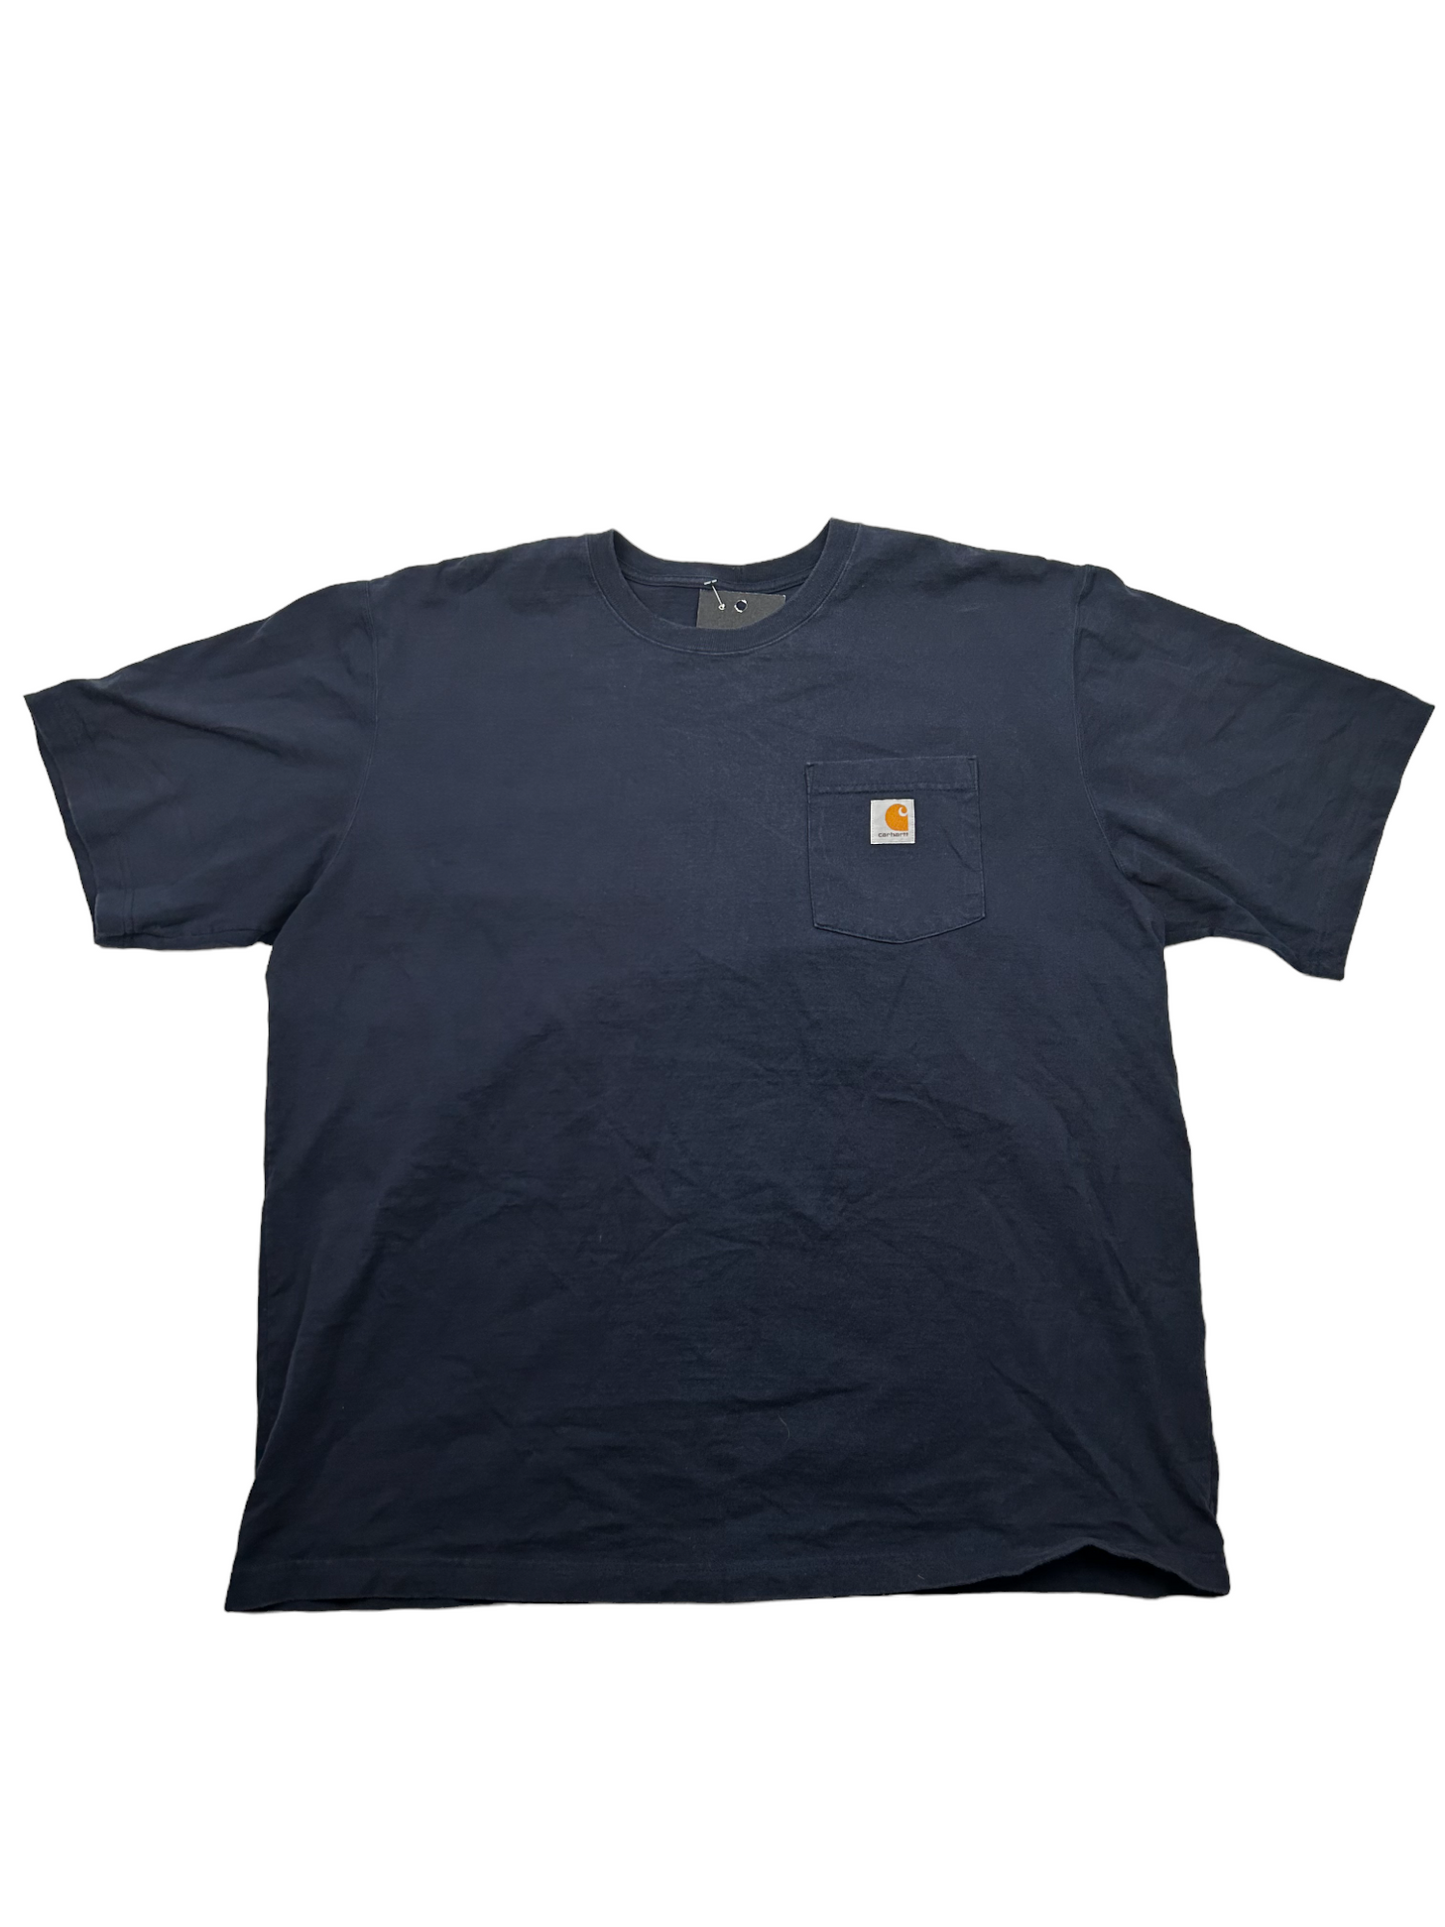 Carhartt Navy Blue Pocket T-Shirt